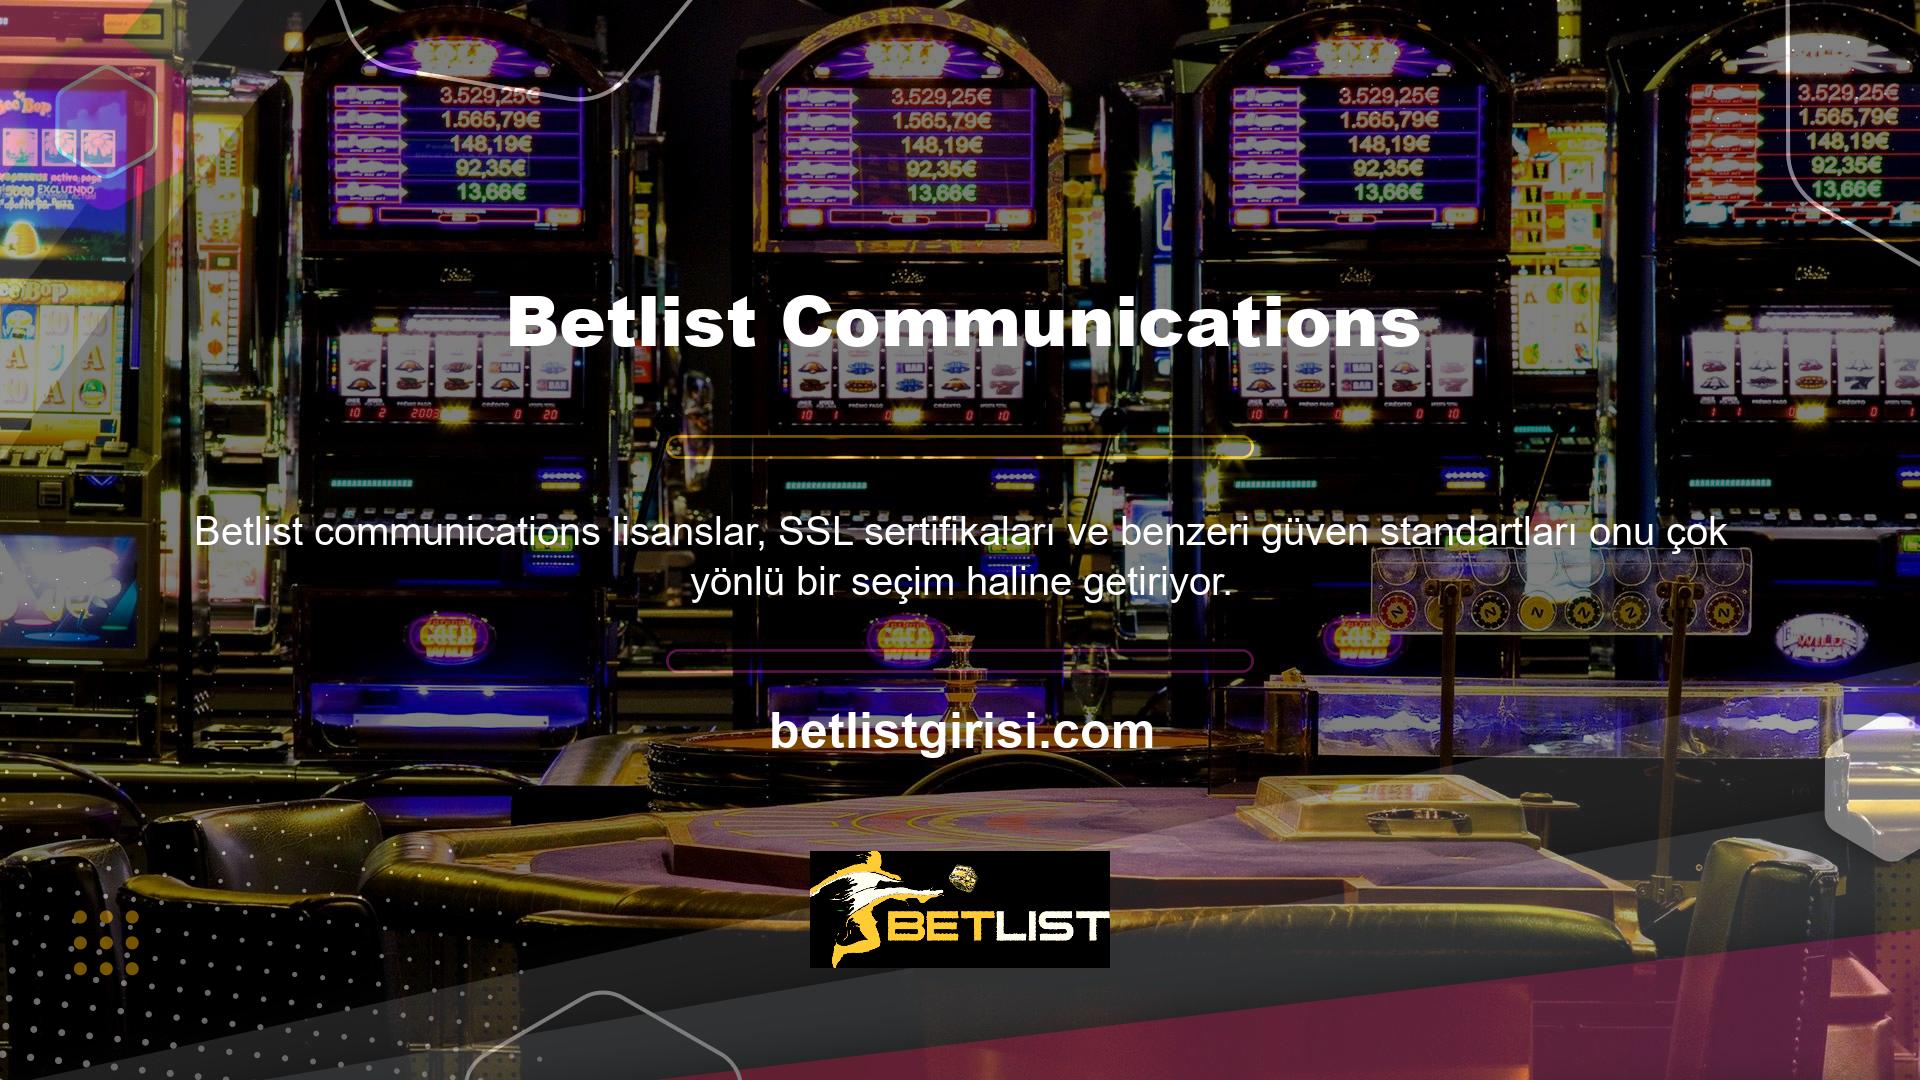 Ayrıca Betlist web sitesi detaylarını ziyaret ederek daha fazla bilgi edinebilirsiniz